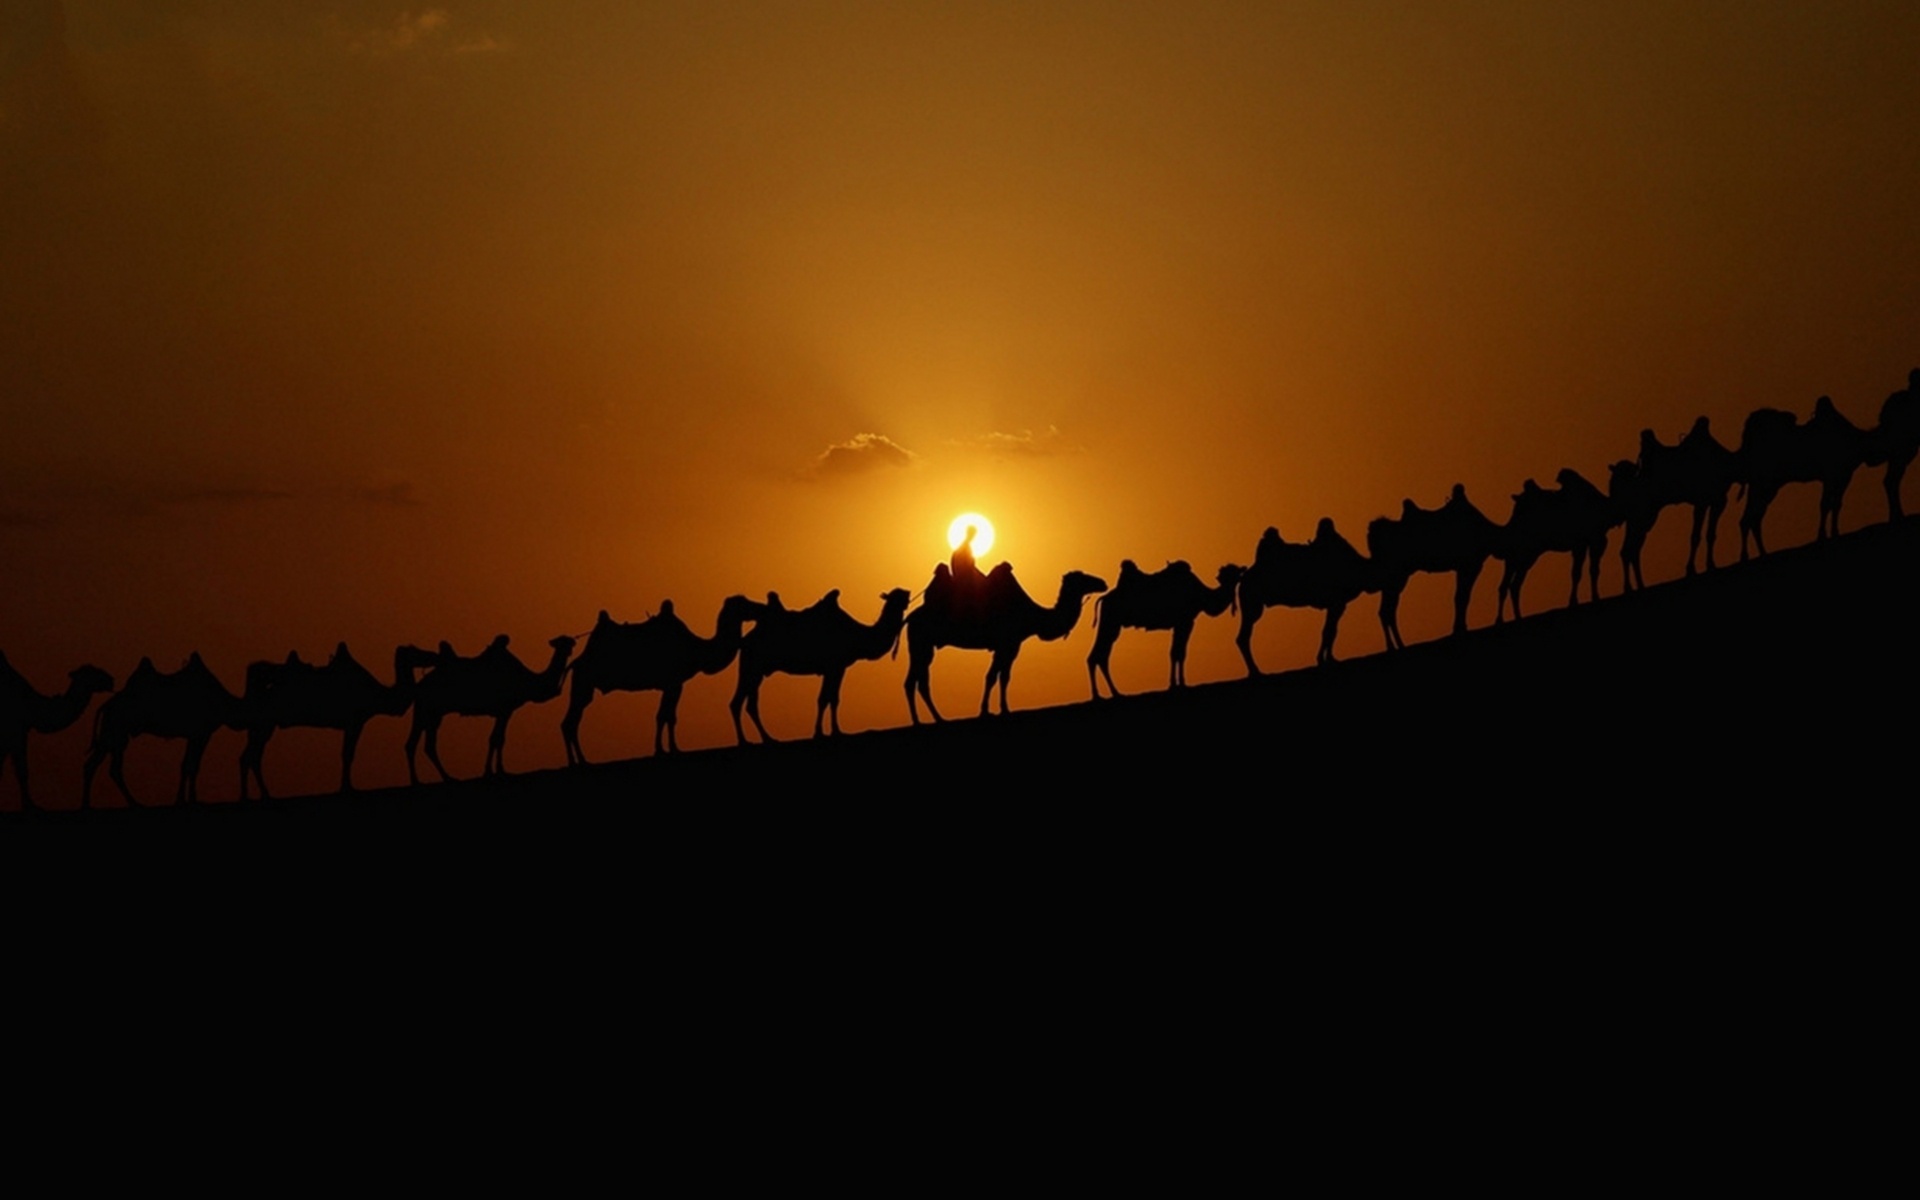 Караван ночью на глазах. Картинка Караван верблюдов в пустыне. Верблюд в пустыне.